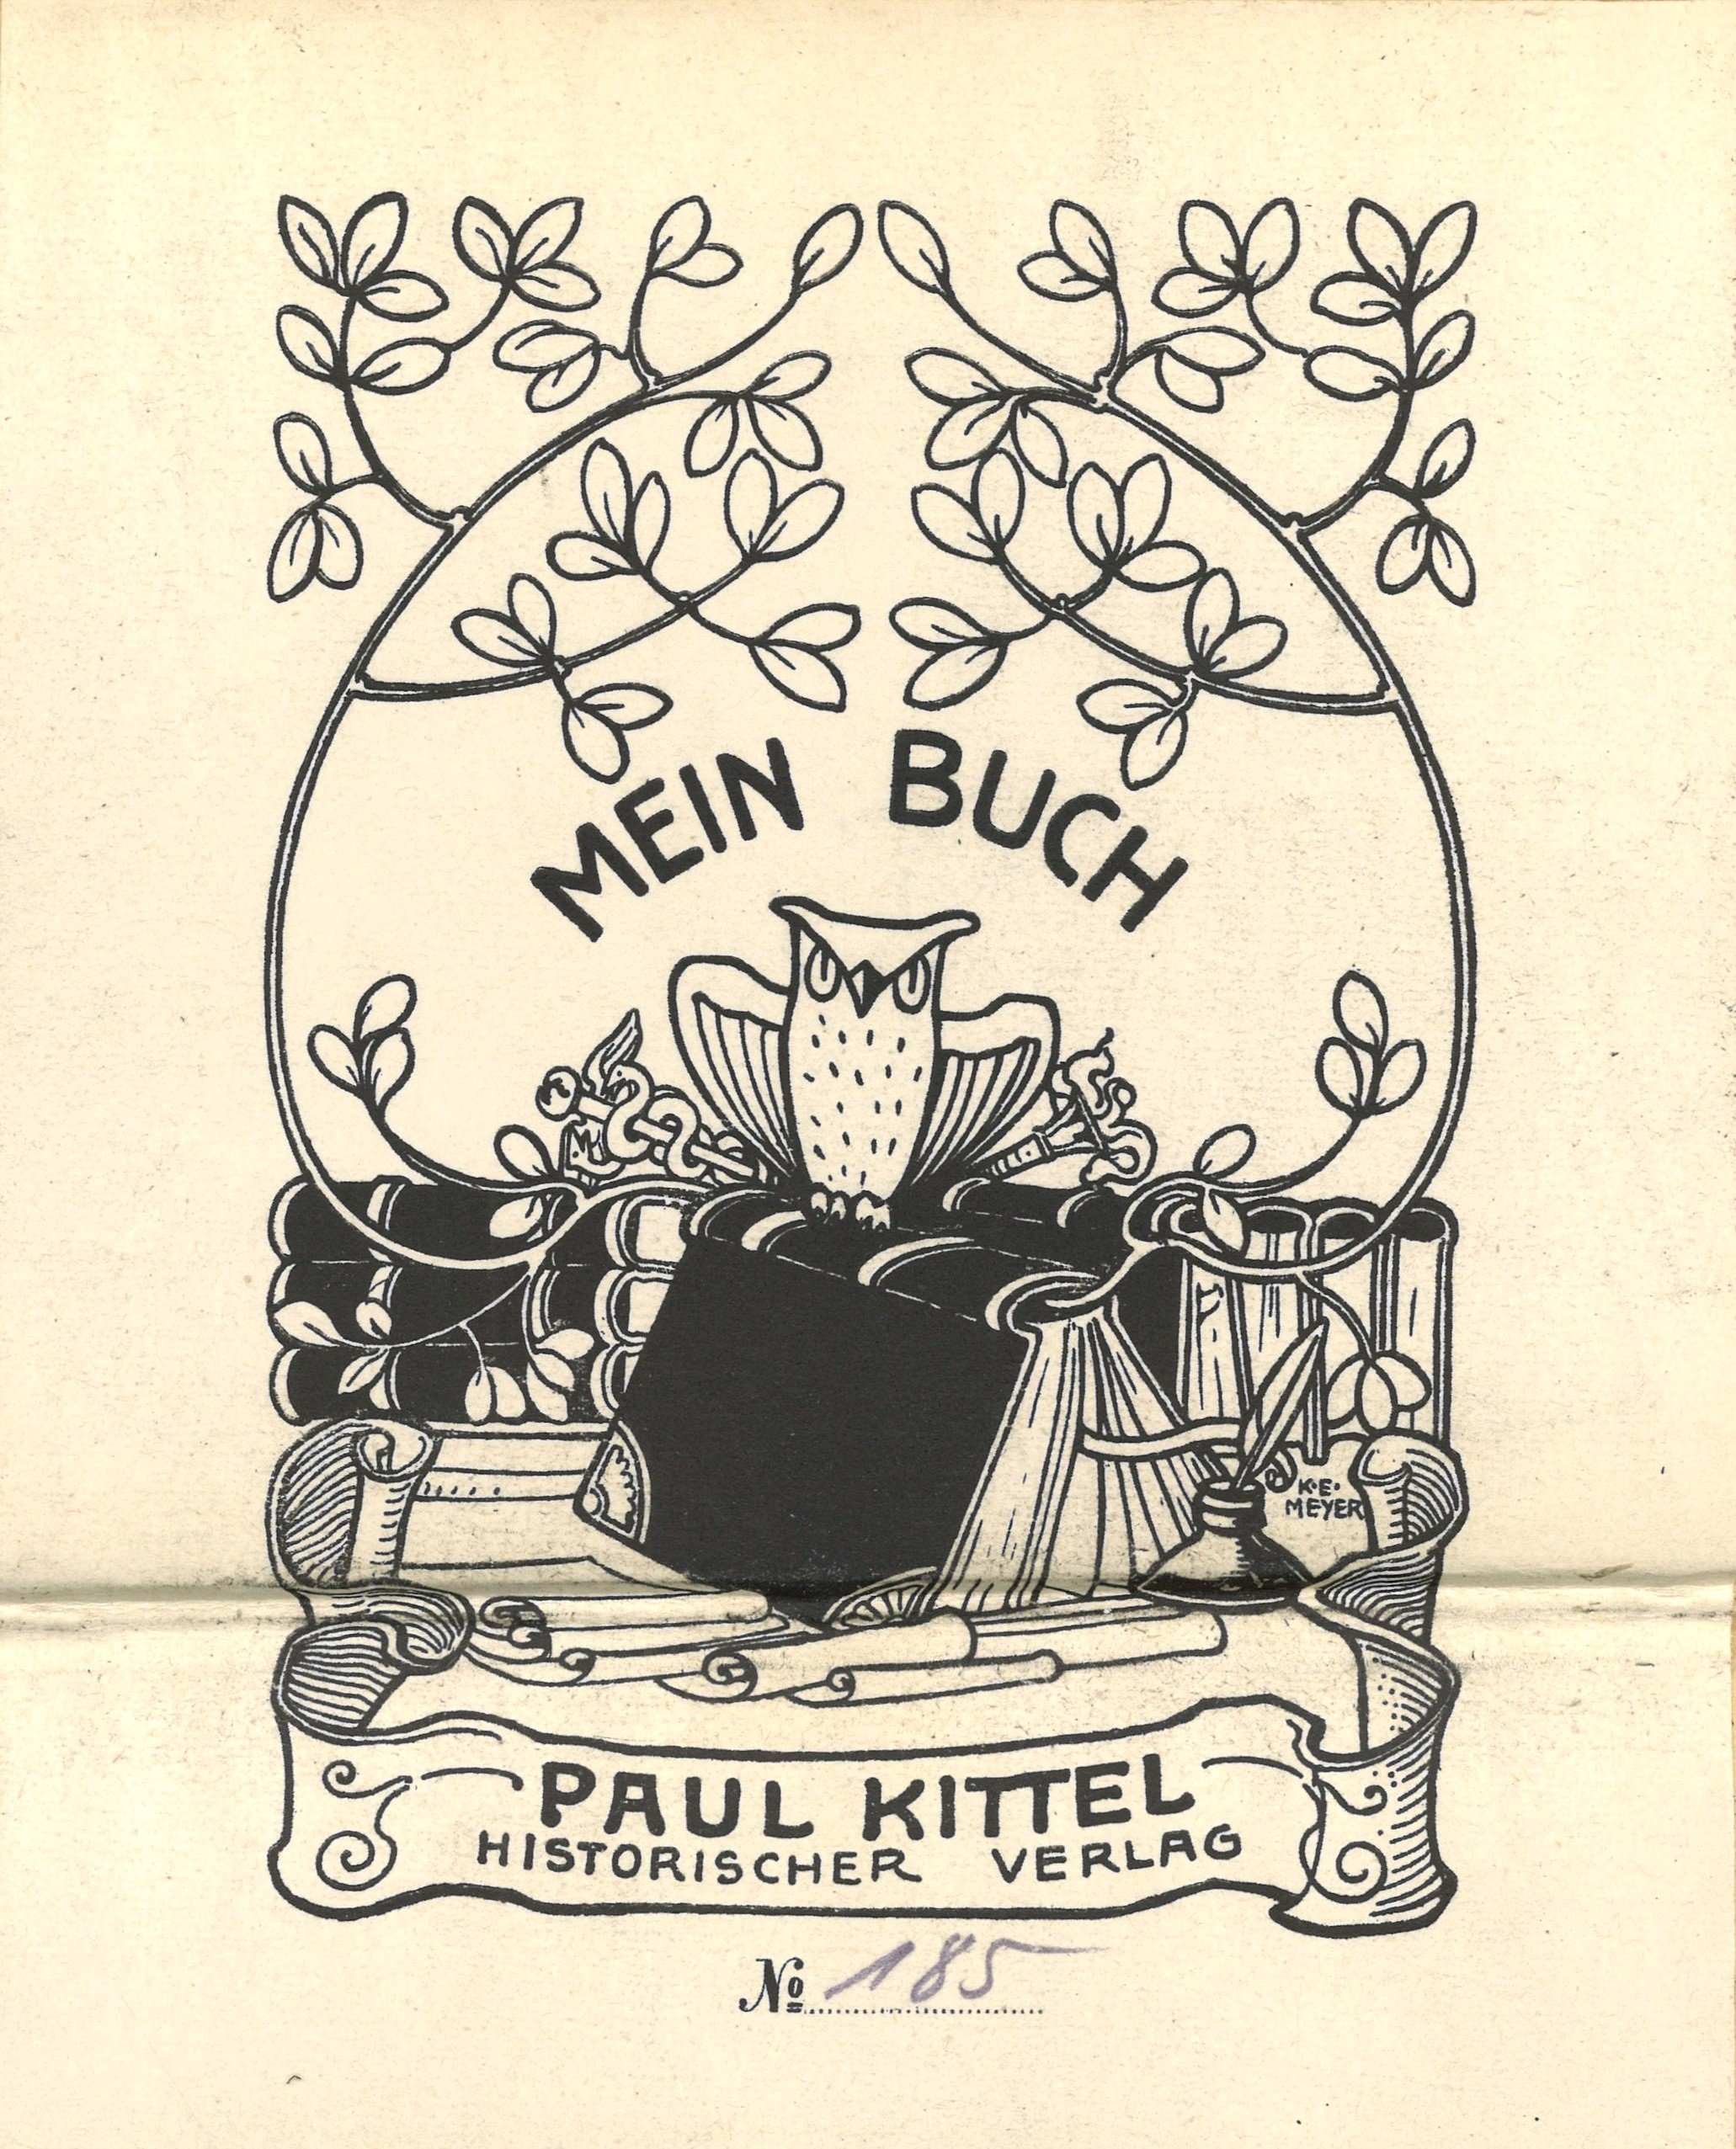 Exlibris Paul Kittel Historischer Verlag (Landesgeschichtliche Vereinigung für die Mark Brandenburg e.V. CC BY)